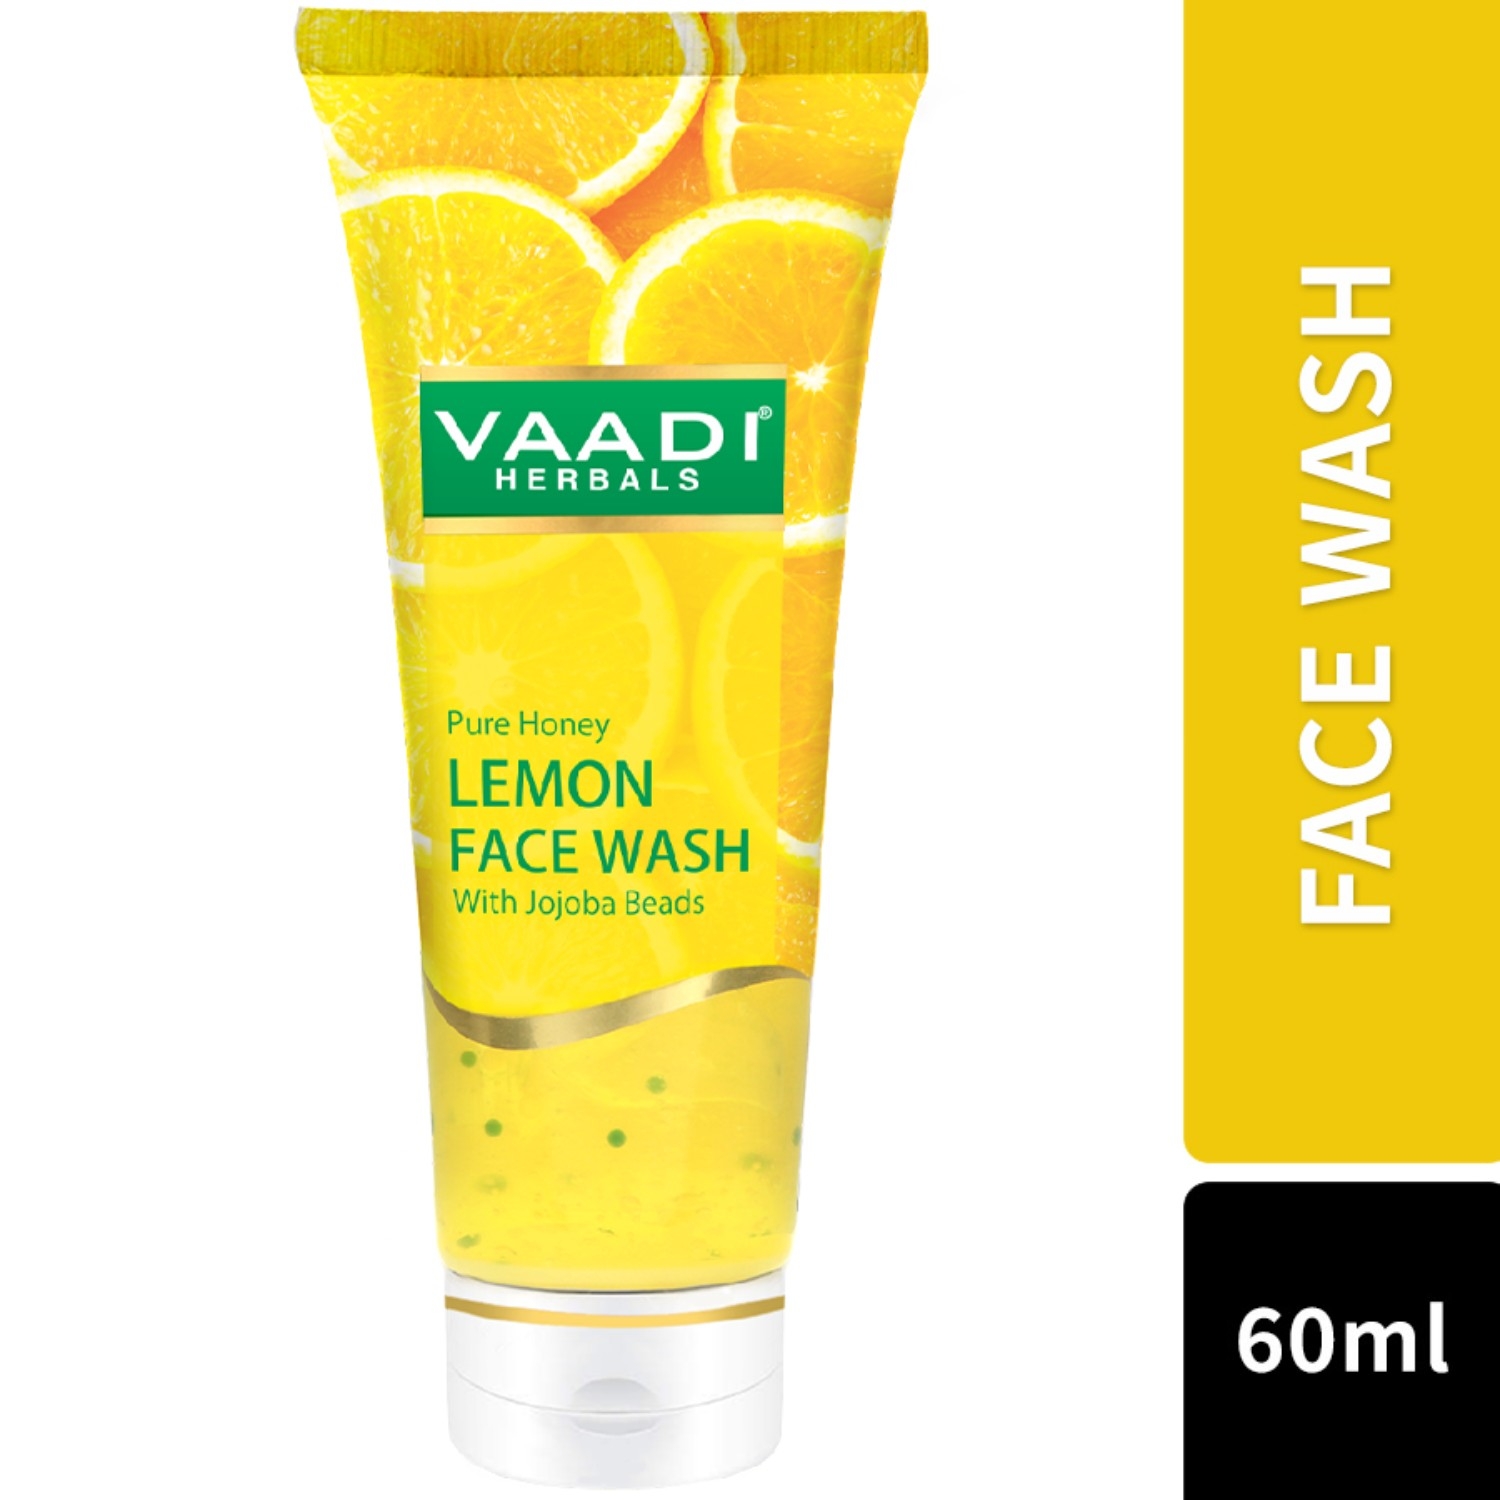 Vaadi Herbals Pure Honey Lemon With Jojoba Beads Facewash (60ml)